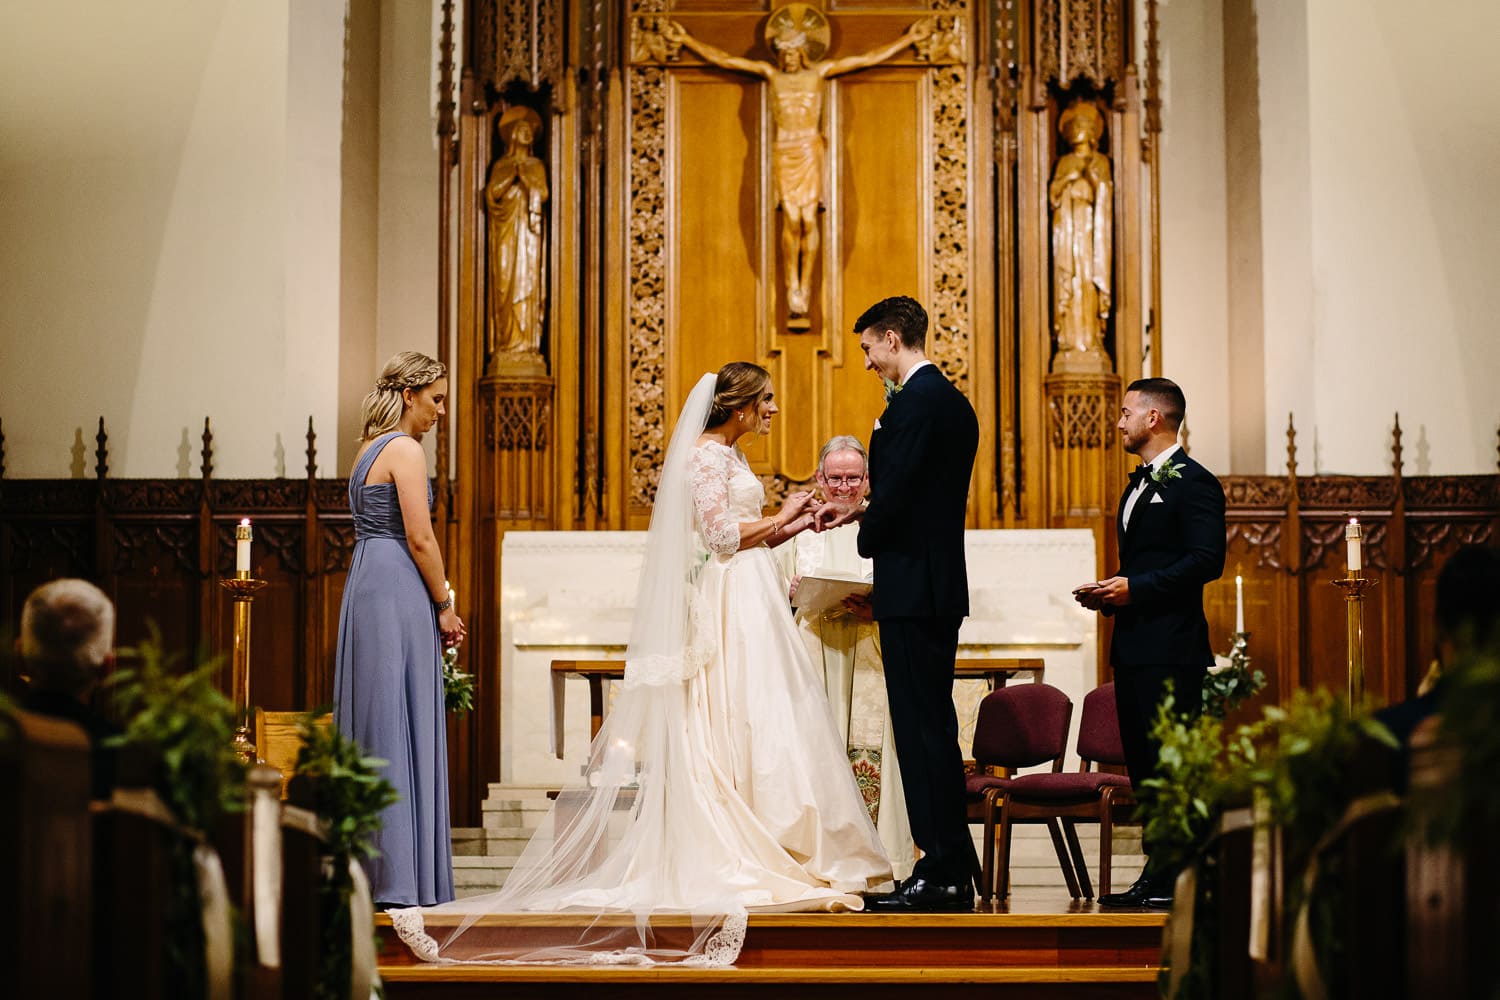 Boston college wedding ceremony at St Ignatius